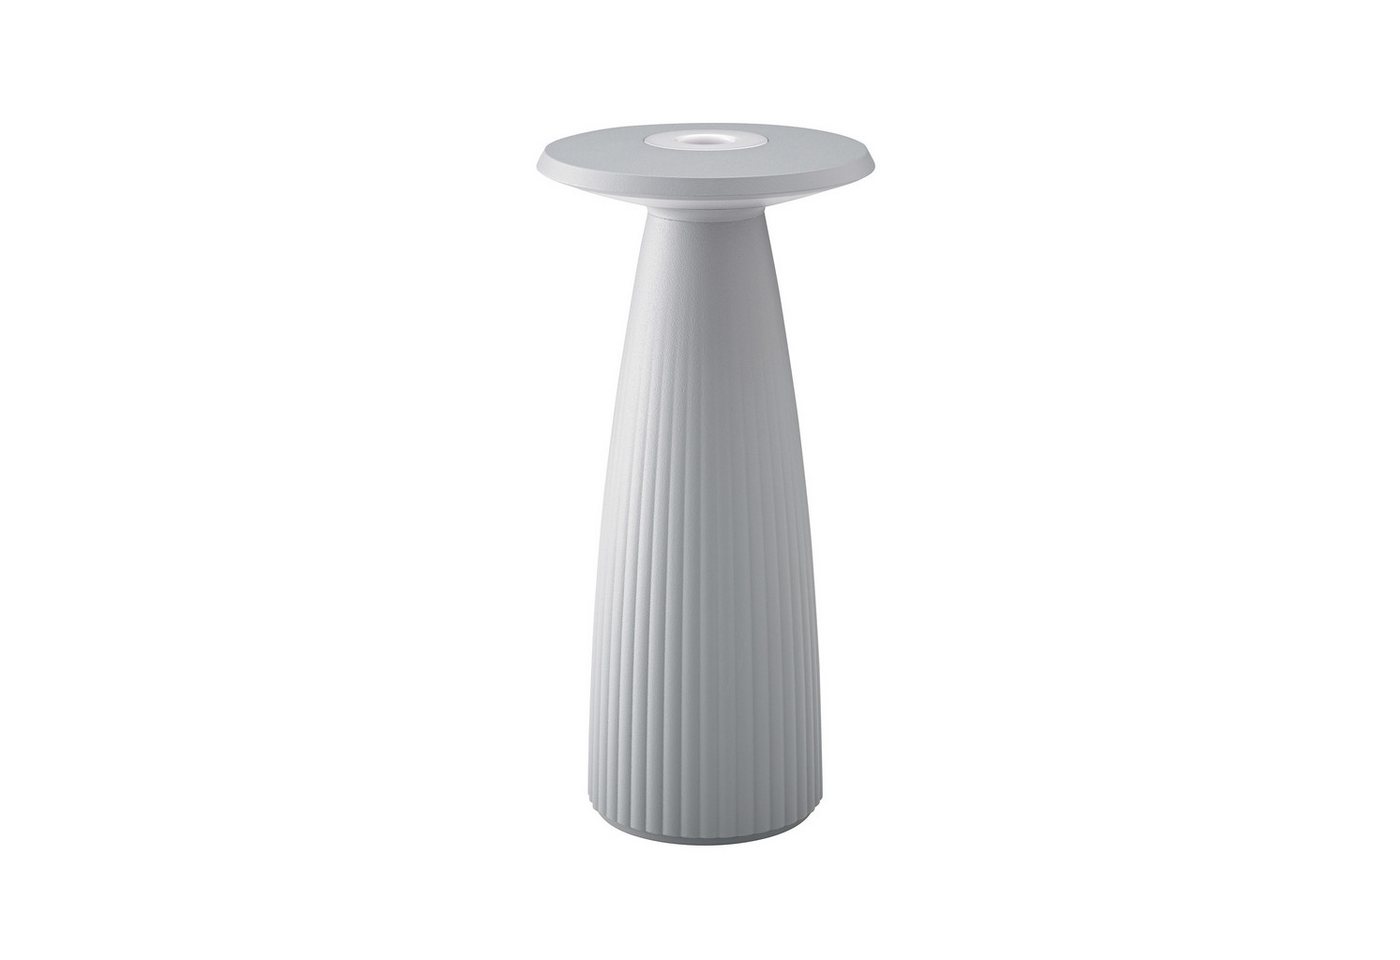 SIGOR LED Tischleuchte Nuflair, Stilvolle 2 in 1 Akku-Tischlampe, LED fest integriert, Kombi aus Vase & Lampe, moderne Tischdekoration, 24x11.5x11.5 cm von SIGOR